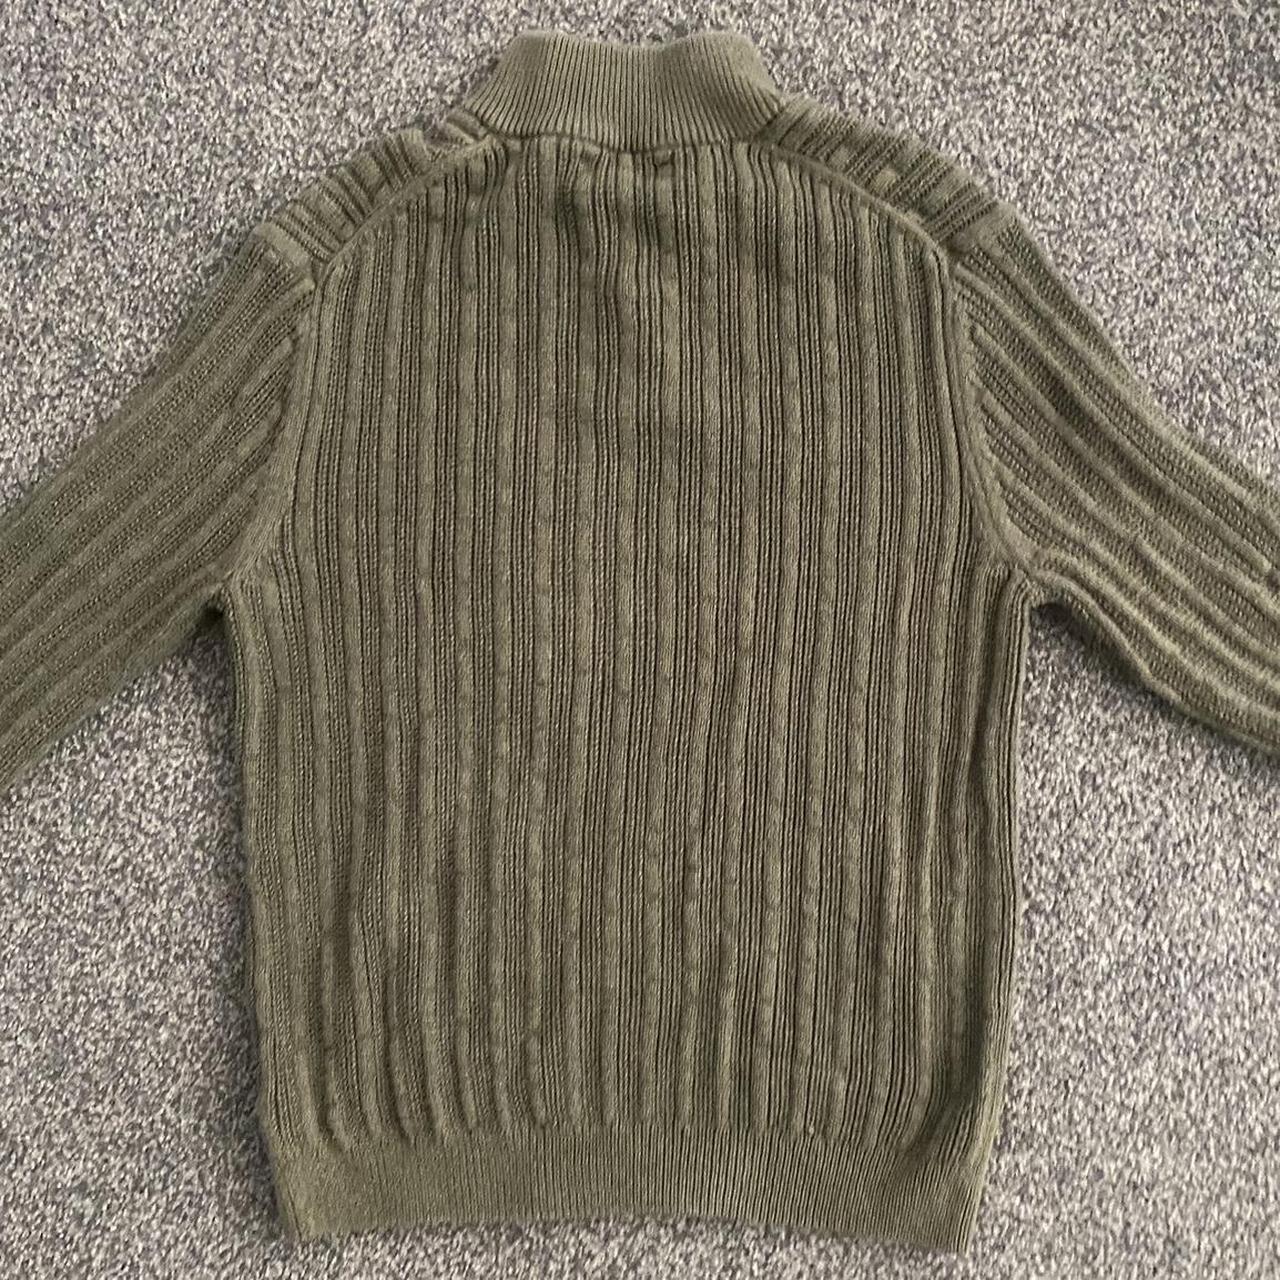 Vintage Cable Knit Quarterzip Sweater - Super nice... - Depop